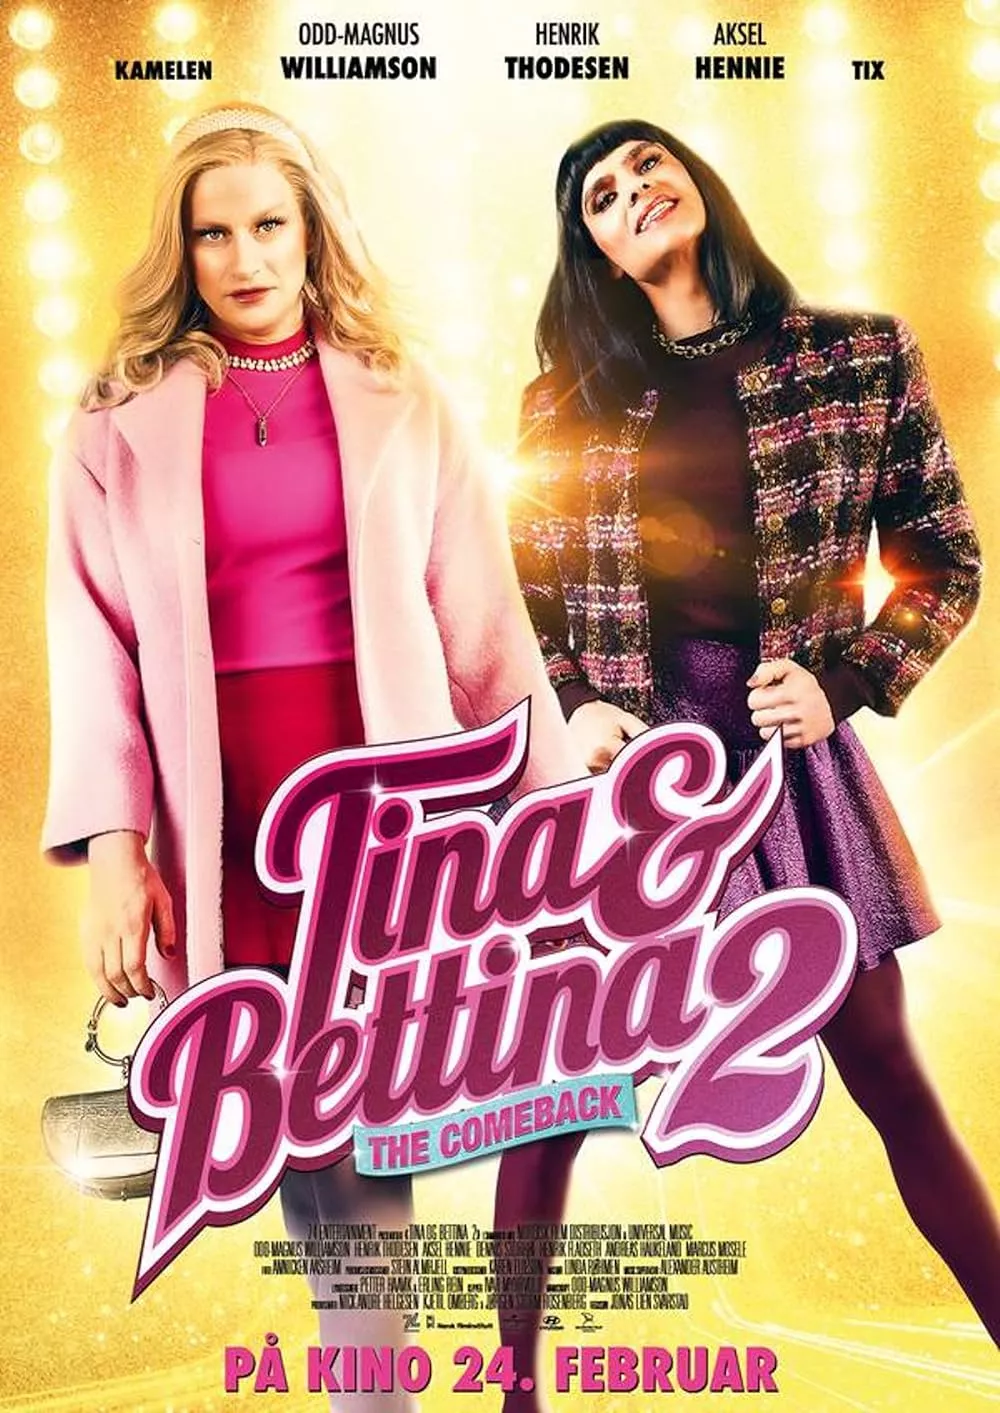 Tina & Bettina 2 | Trailer | Pu00e5 kino 24. februar